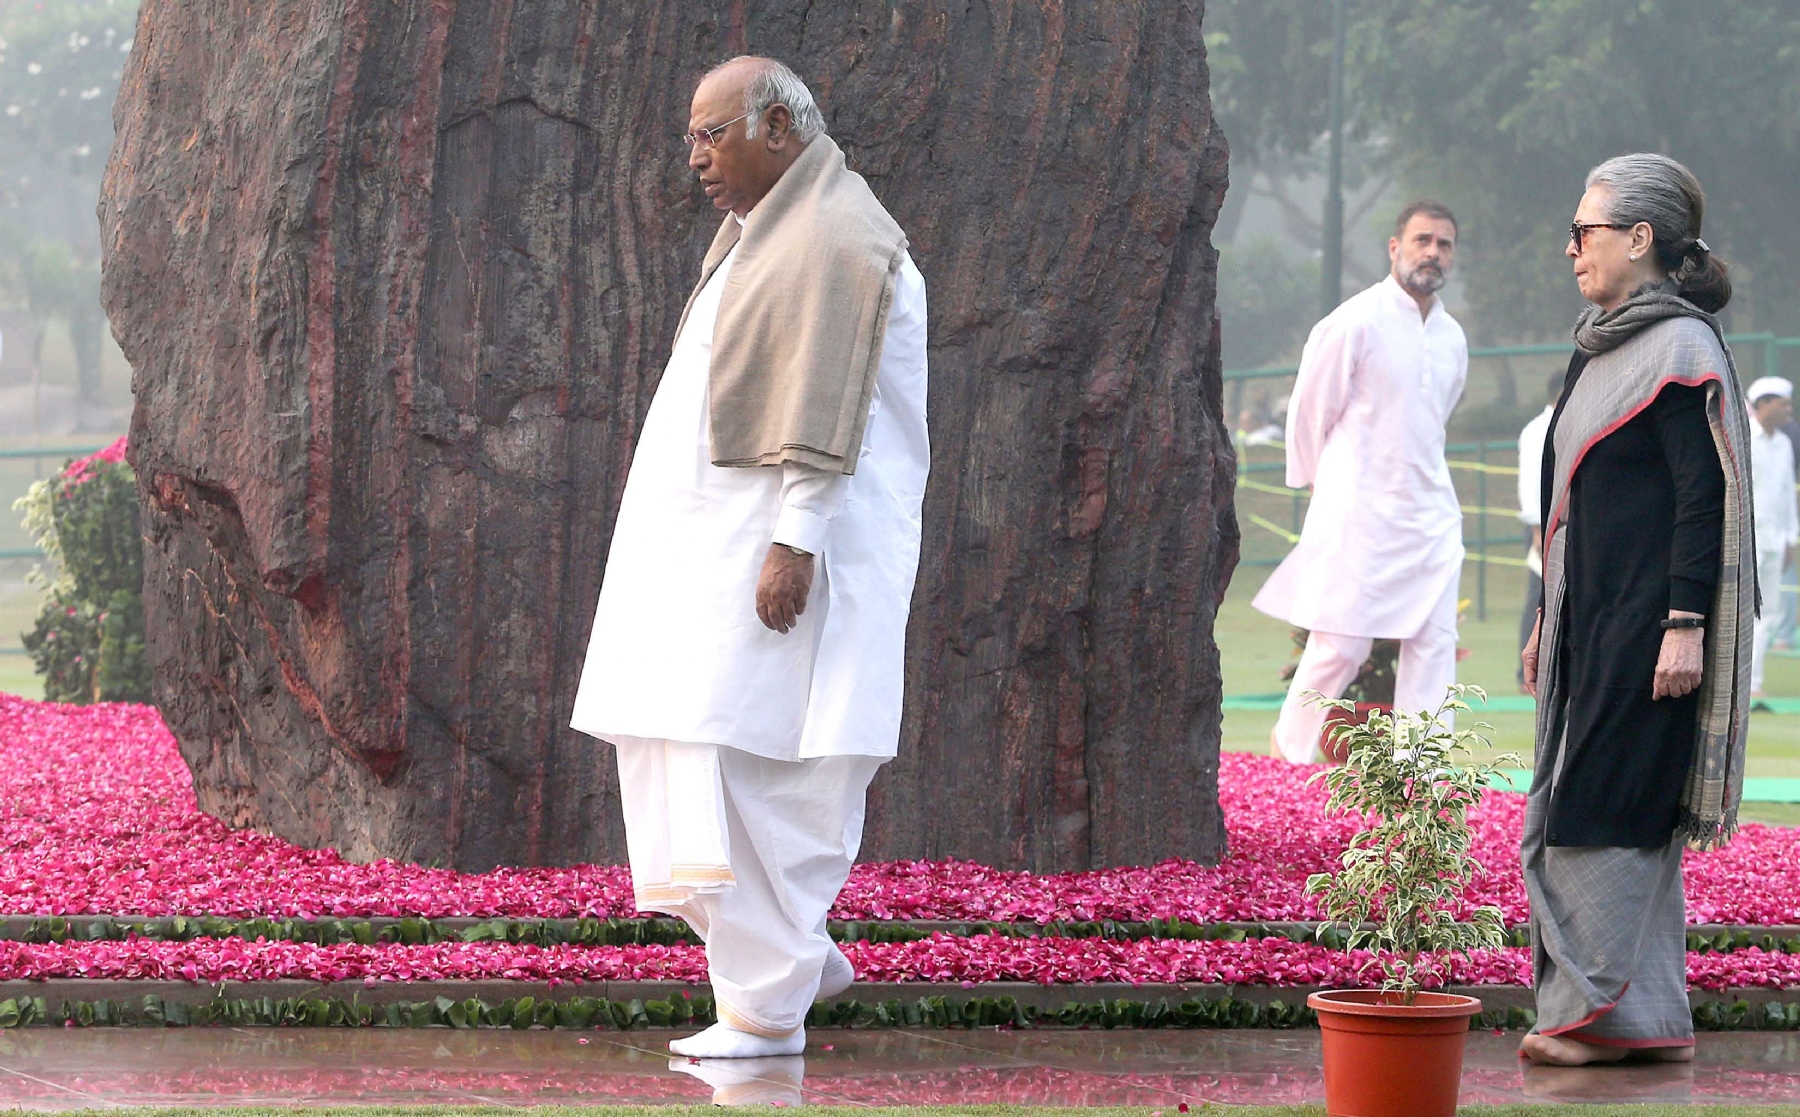 नई दिल्ली में मंगलवार 31 अक्टूबर को कांग्रेस अध्यक्ष मल्लिकार्जुन खरगे और सोनिया गांधी, राहुल गांधी ने पूर्व प्रधानमंत्री इंदिरा गांधी की 39वीं पुण्यतिथि पर पुष्पांजलि अर्पित करते हुए। हिन्दुस्थान समाचार/ फोटो गणेश बिष्ट